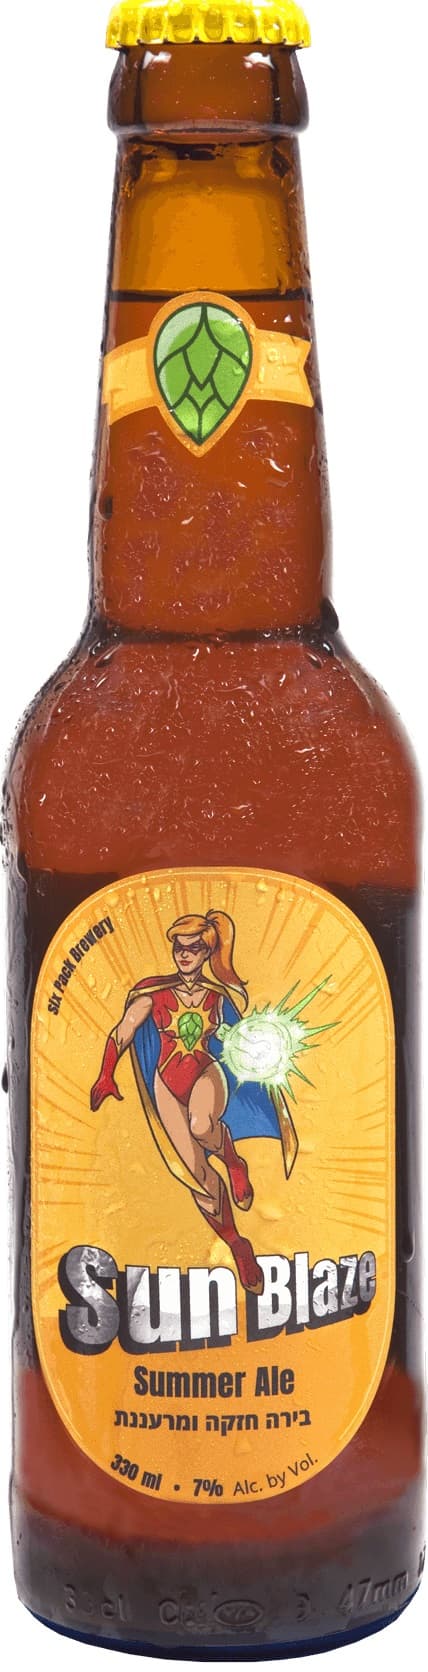 בירה גיבורי על - סאנבלייז